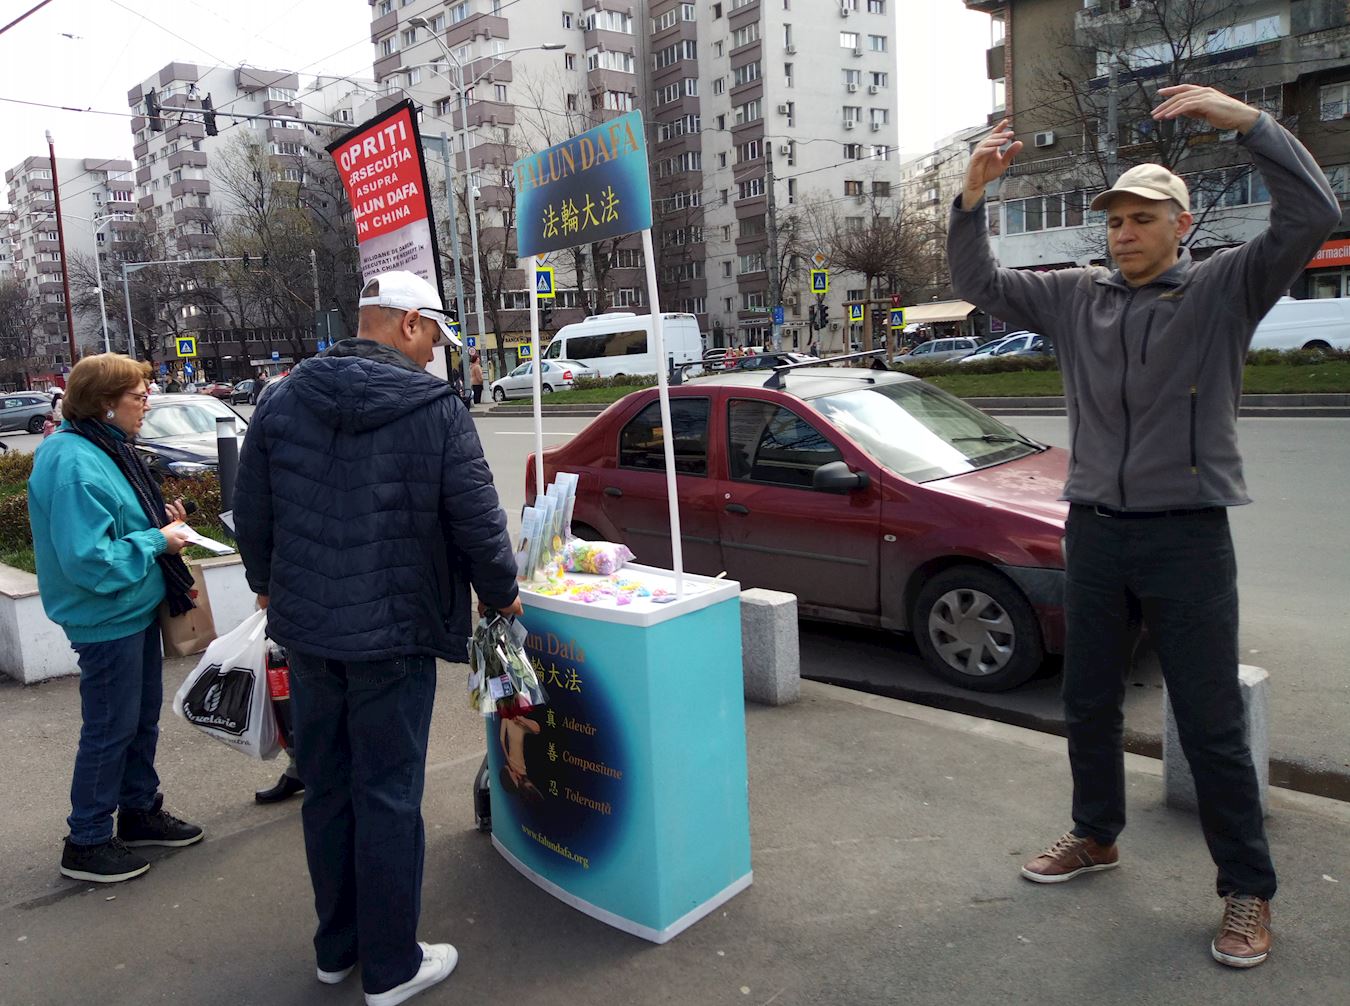 Image for article Румунія. Практикувальники Фалунь Дафа в Бухаресті провели захід і розповіли людям про переслідування в Китаї